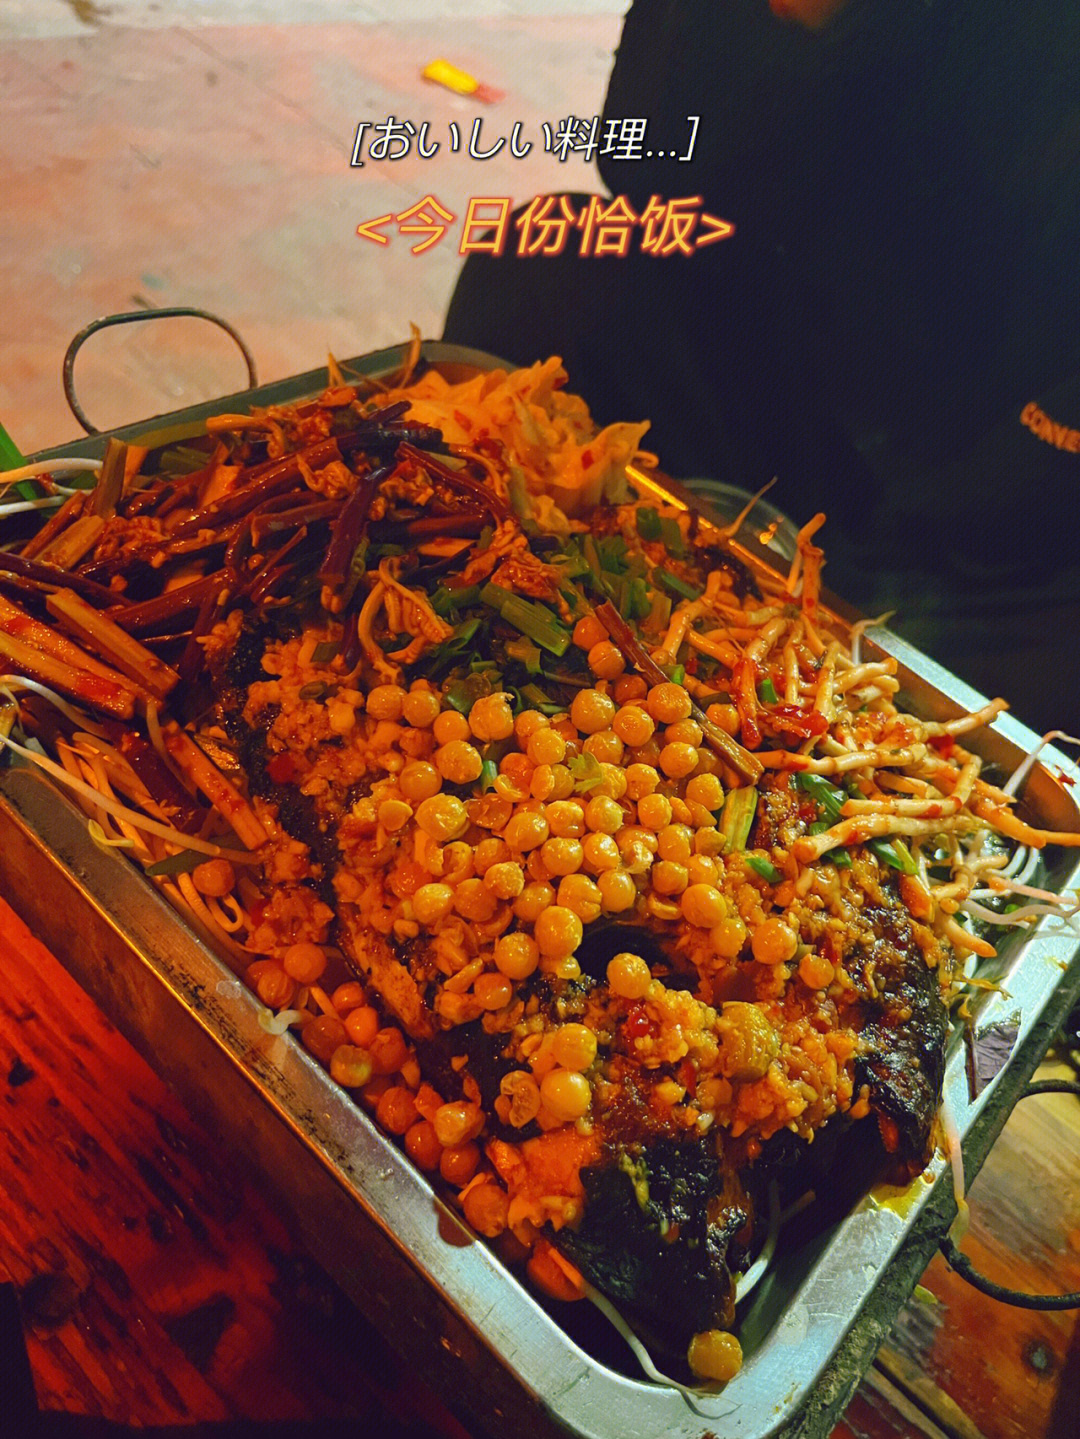 柳州龙潭花园烧烤图片